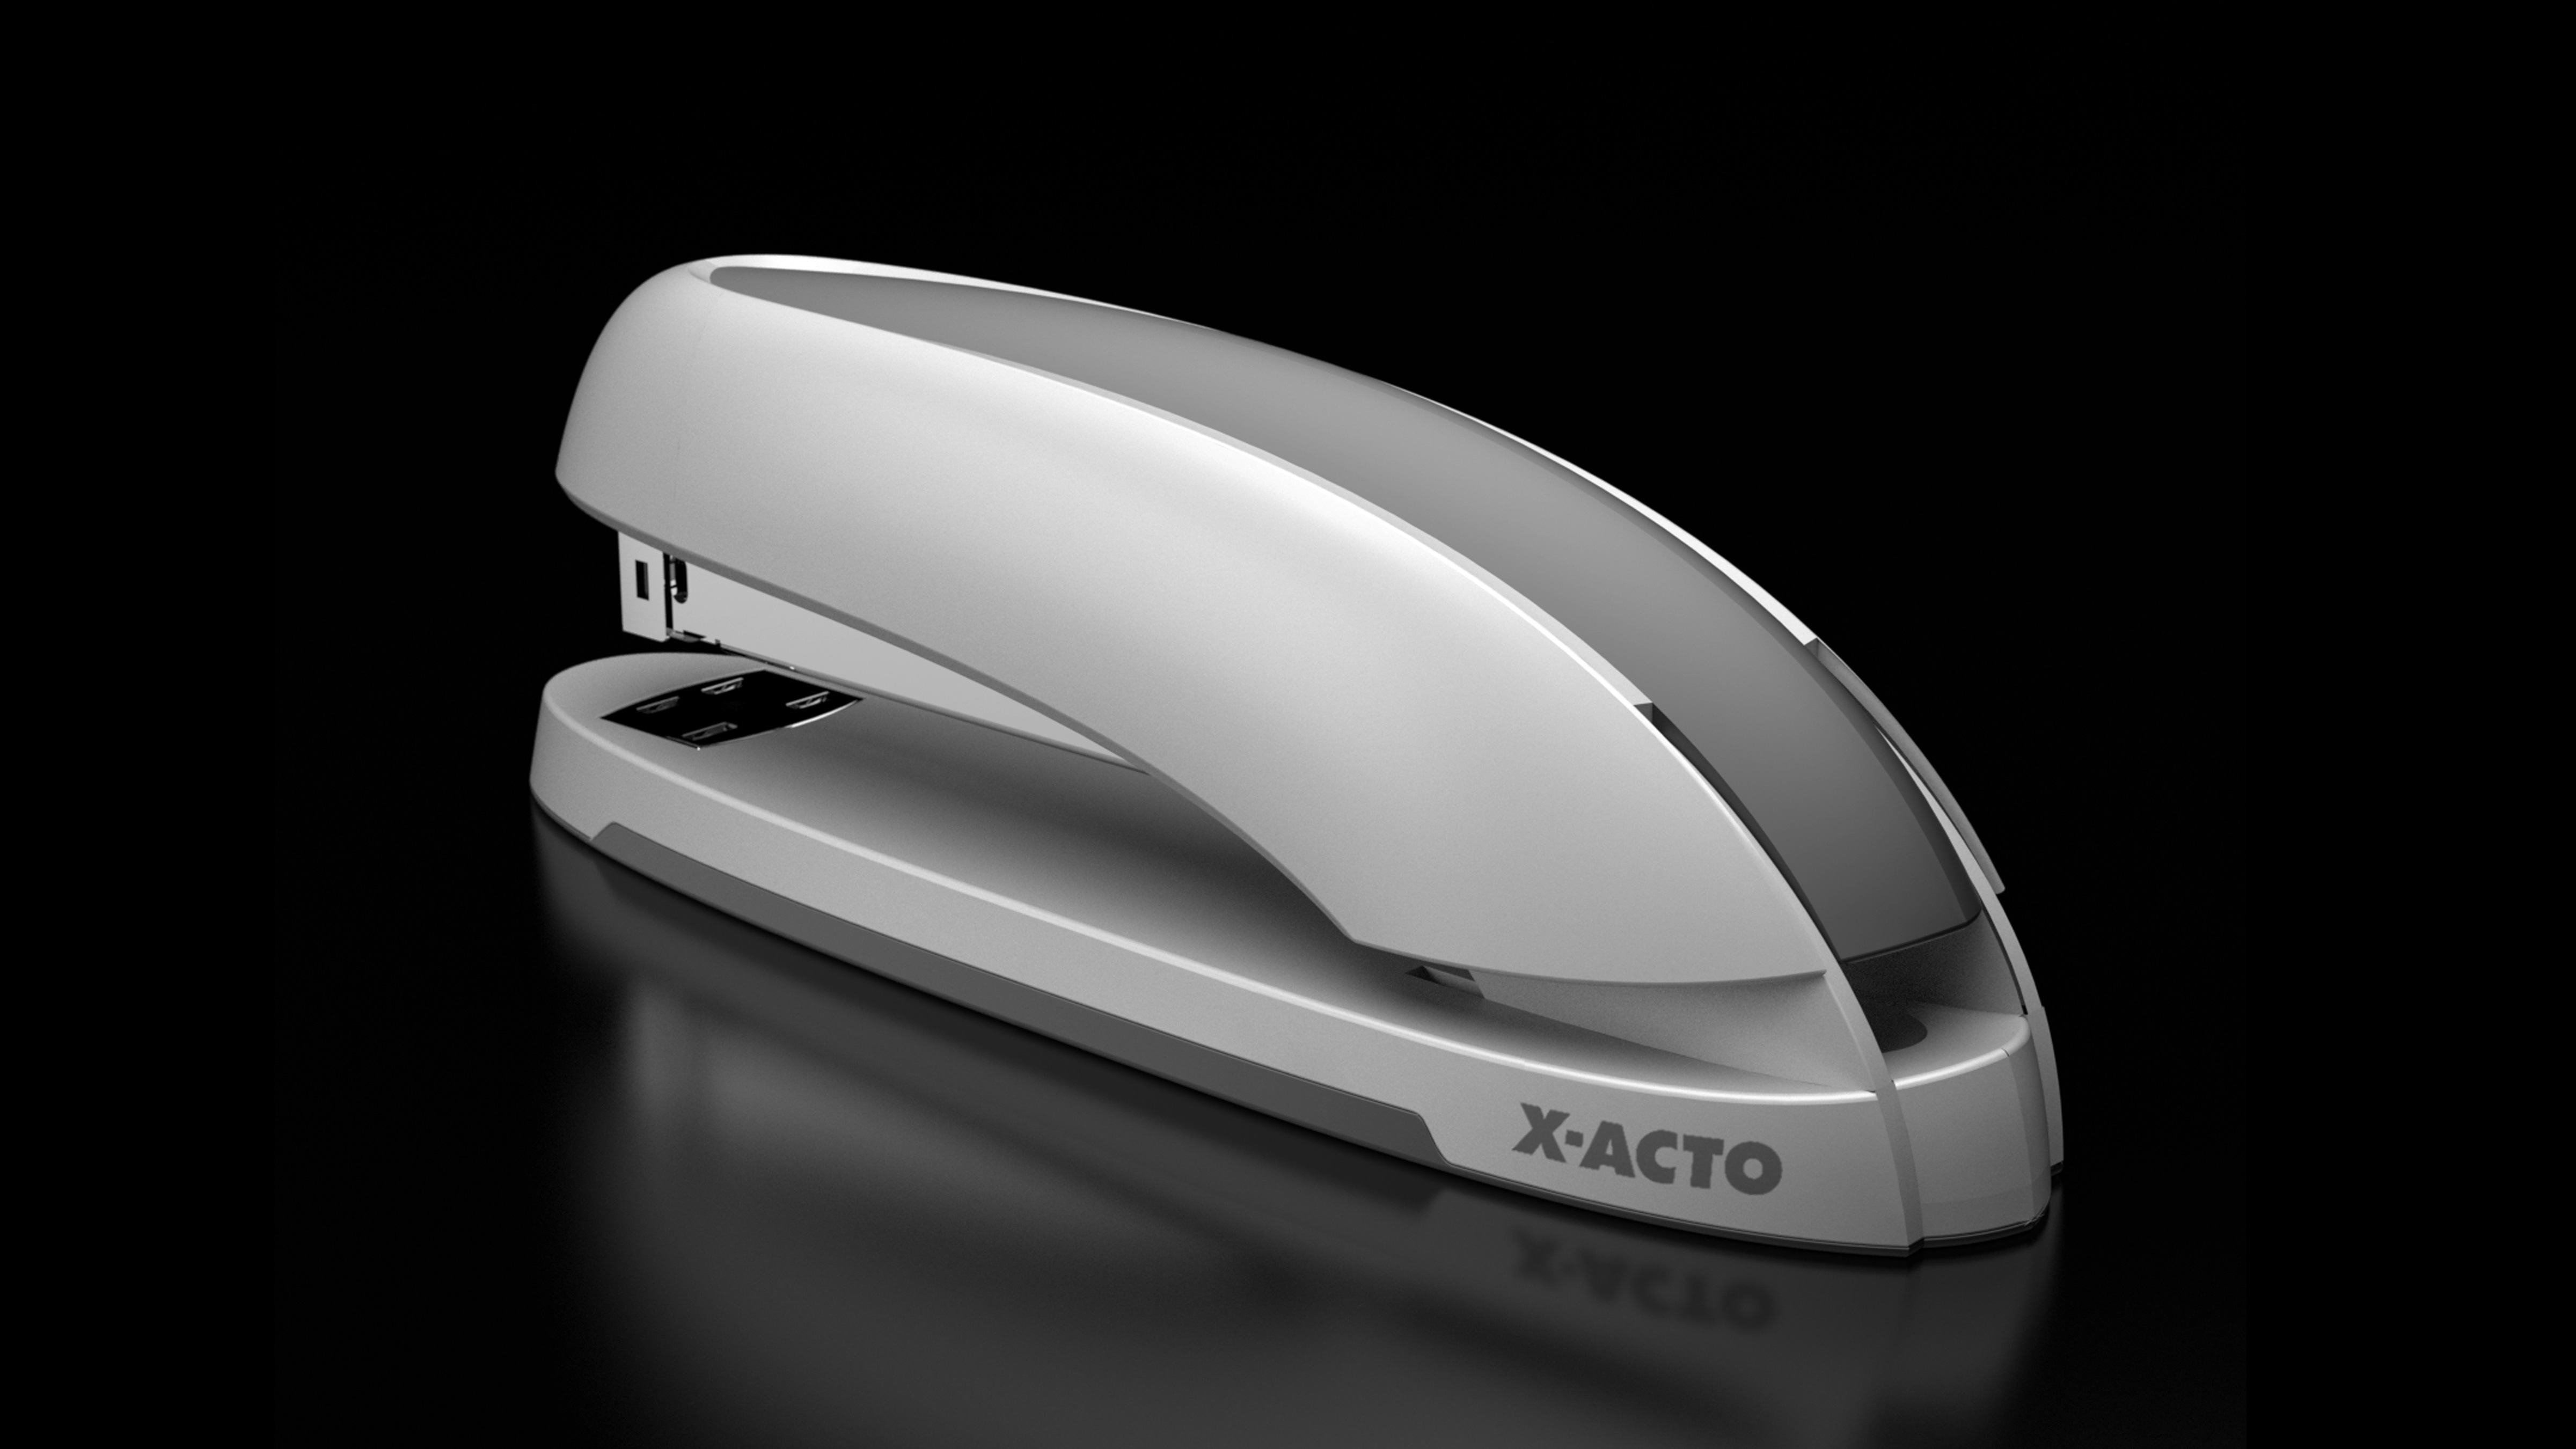 x acto stapler consumer product design 31